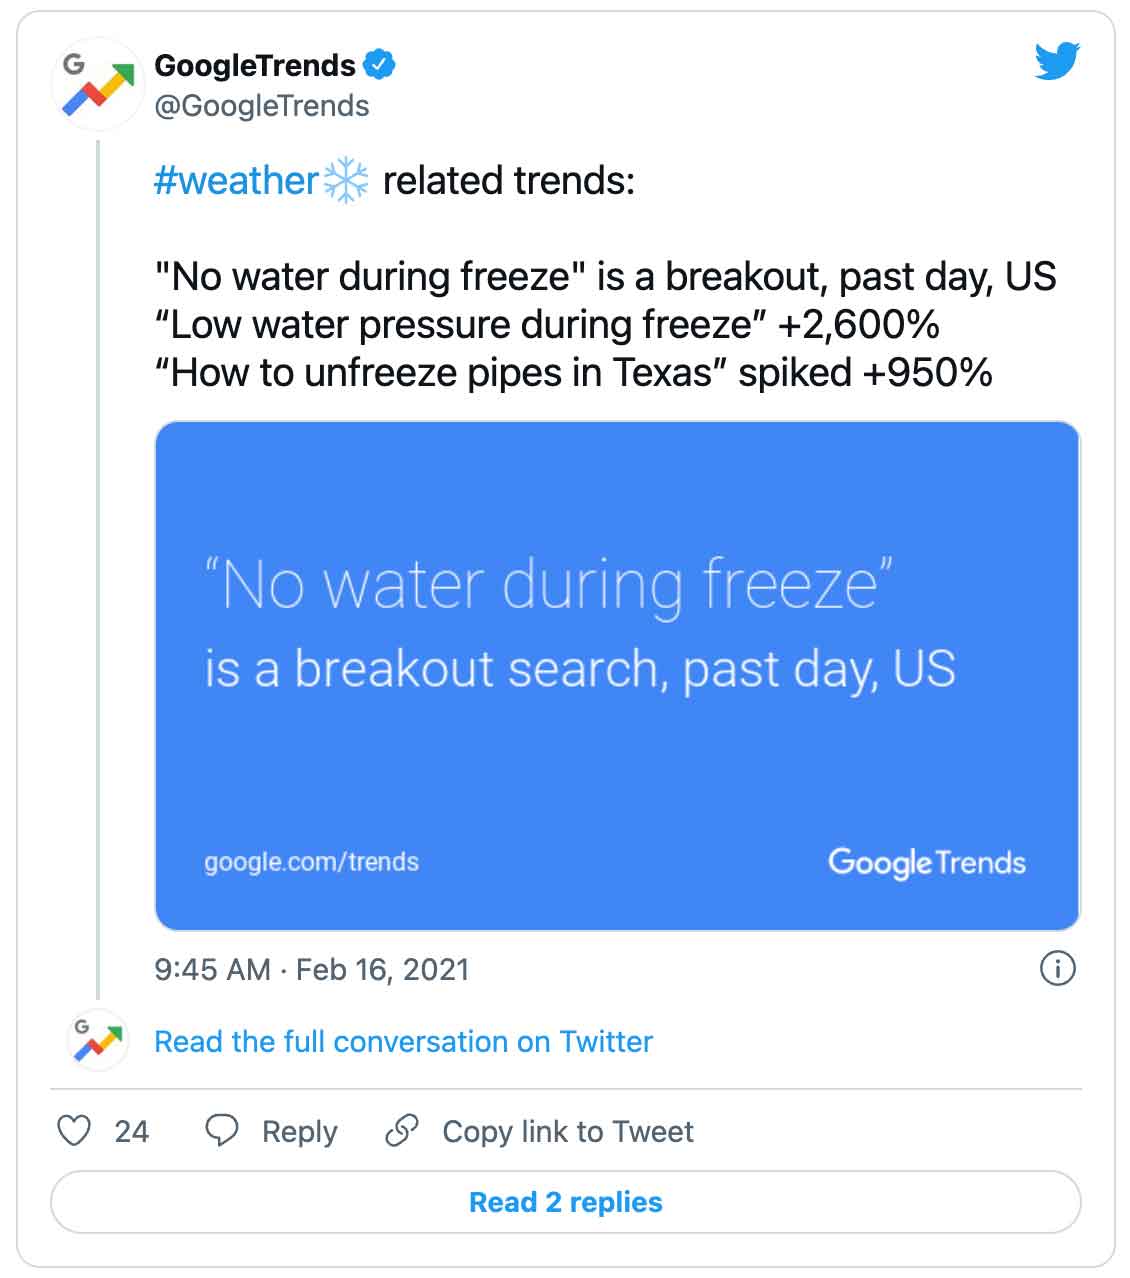 Tweet: GoogleTrends @GoogleTrends #weather❄️ gerelateerde trends:  "Geen water tijdens het bevriezen" is een uitbraak, afgelopen dag, VS 